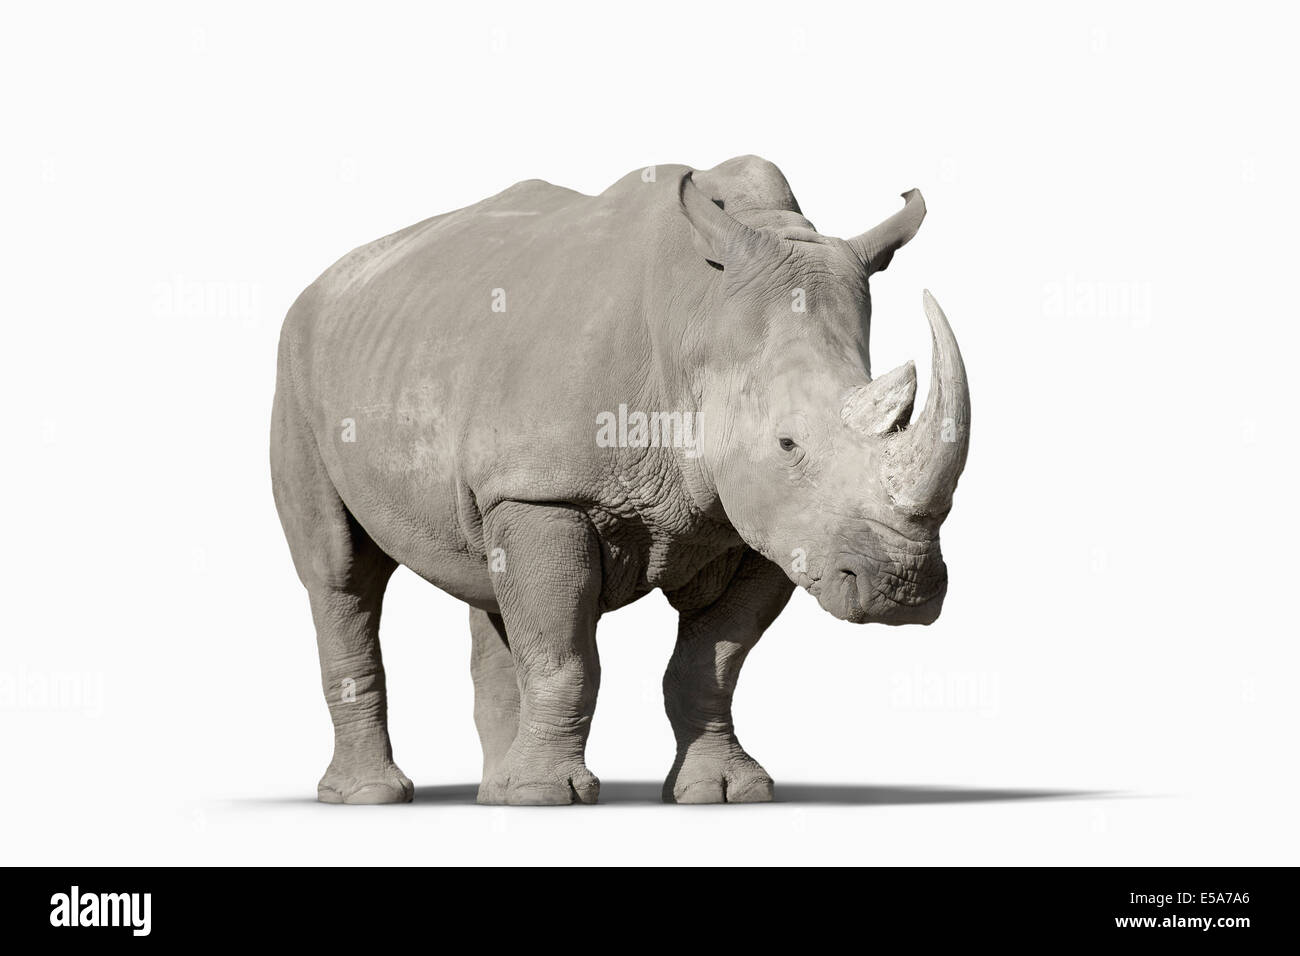 Rhinoceros walking in studio Banque D'Images